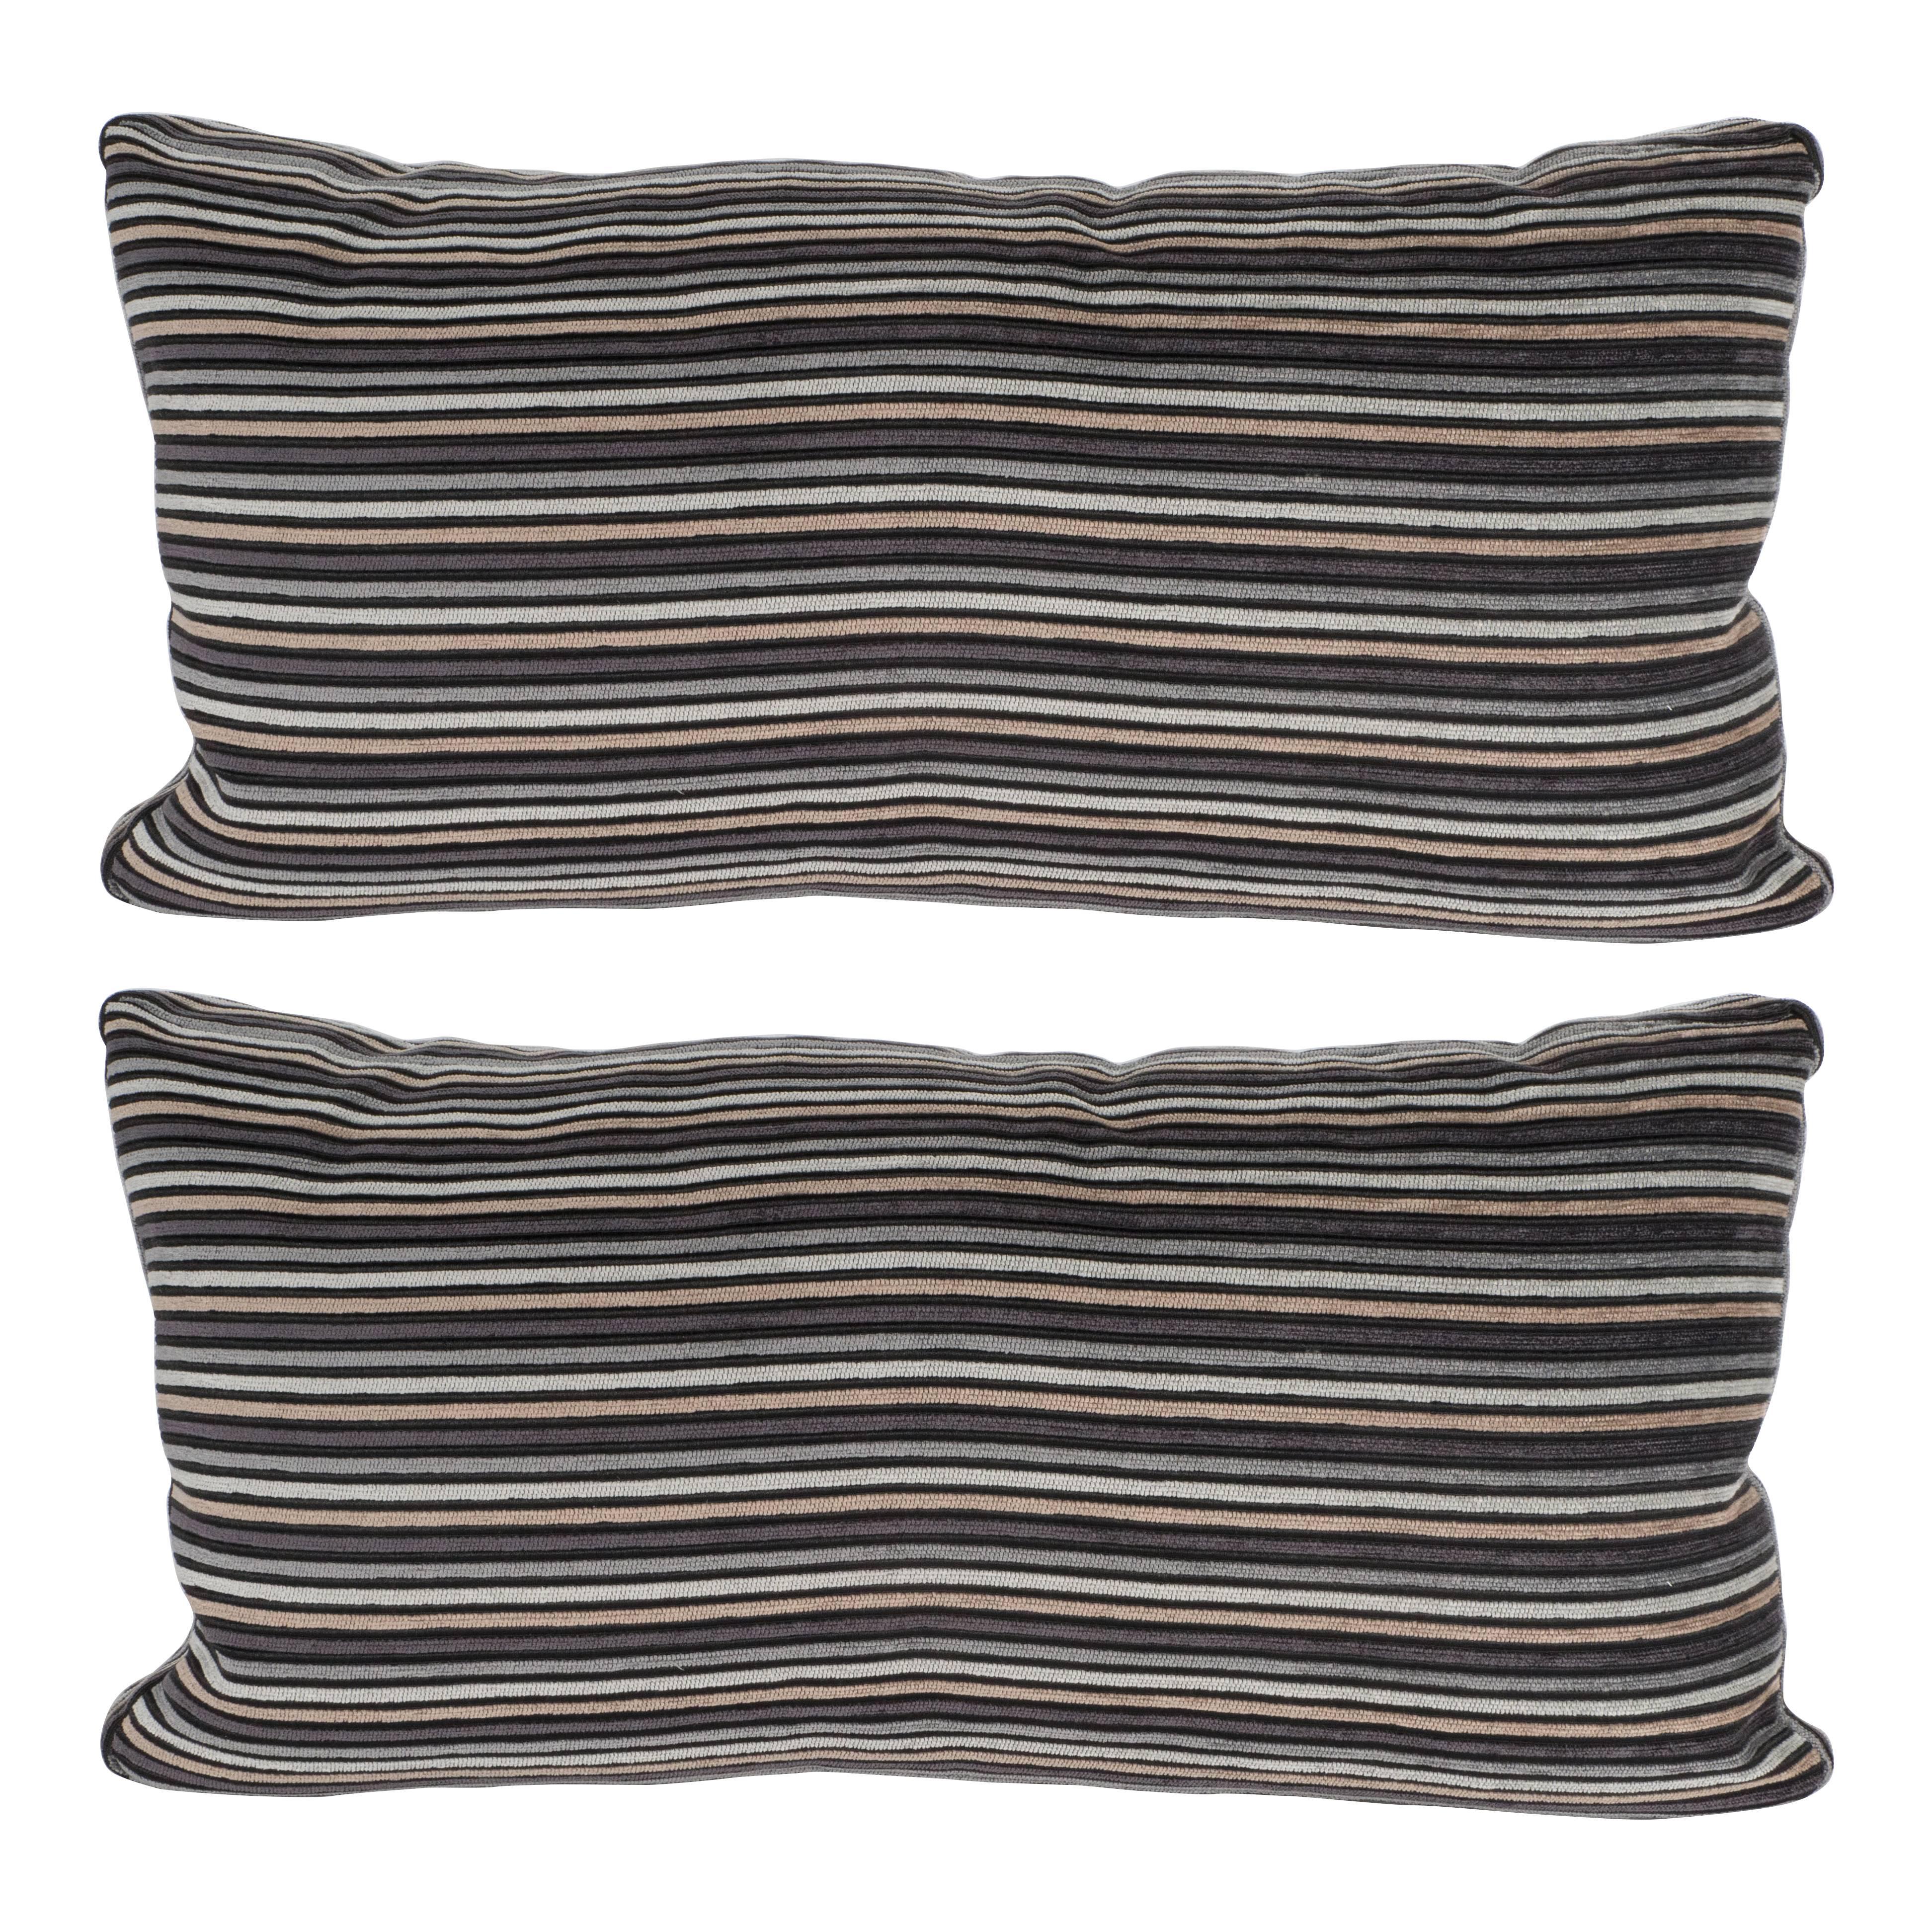 Pair of Modern Rectangular Striped Velvet Pillows in Neutral Silver & Gold Tones